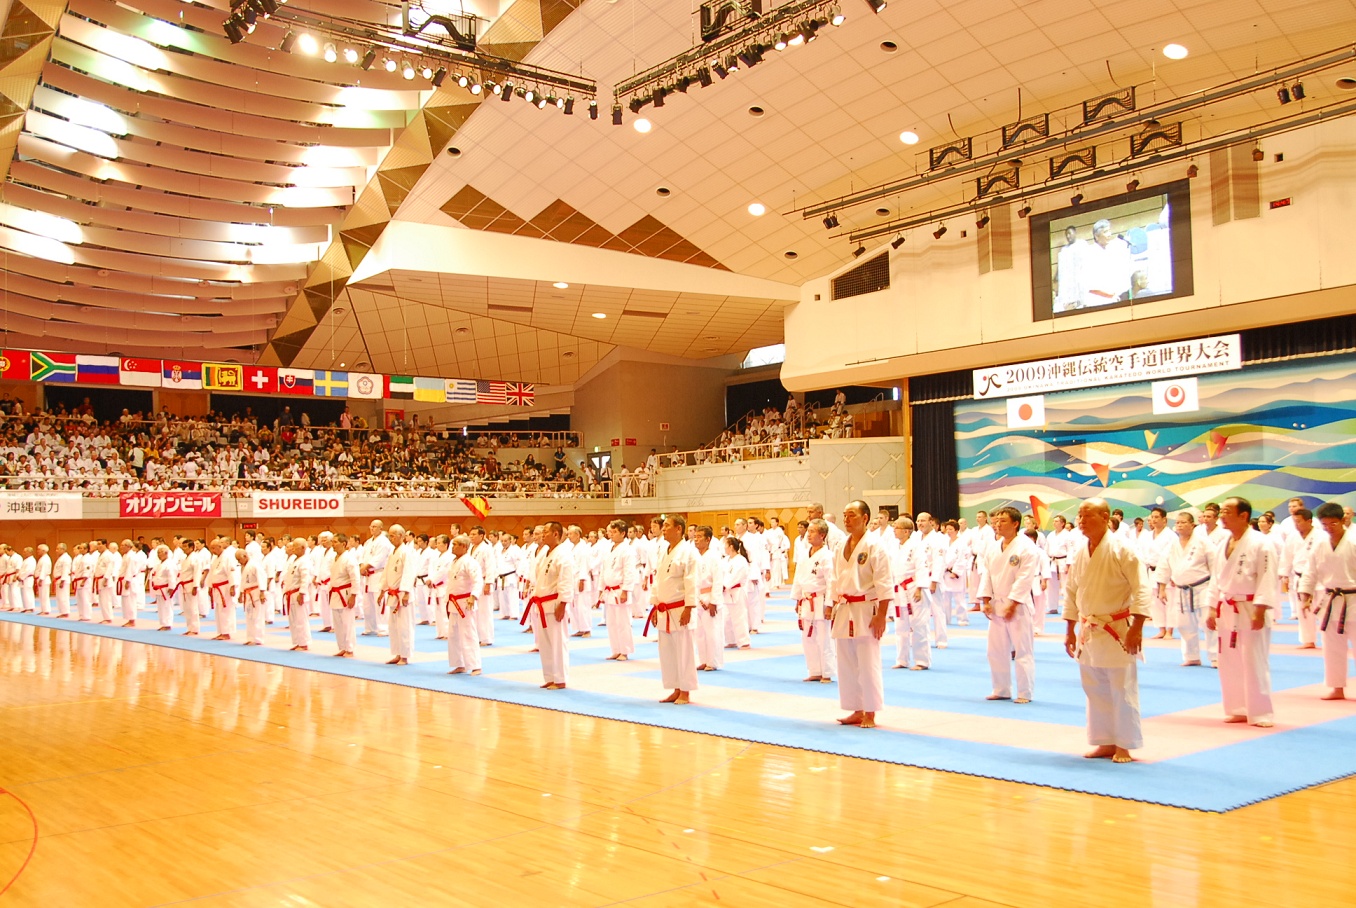 沖縄では世界中から空手の愛好者が集まる選手権大会がある